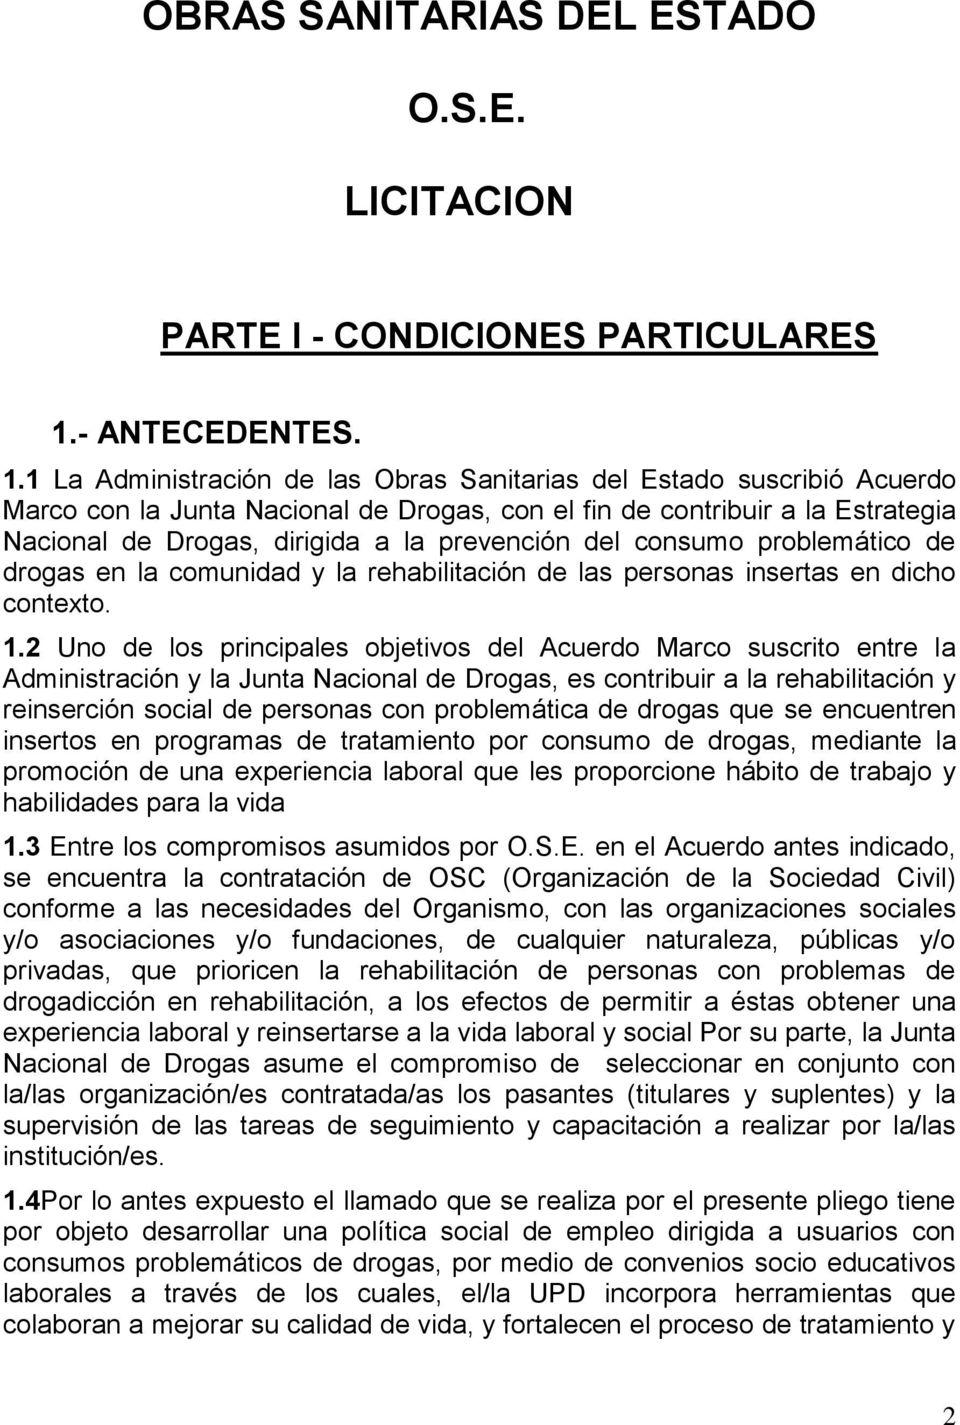 1 La Administración de las Obras Sanitarias del Estado suscribió Acuerdo Marco con la Junta Nacional de Drogas, con el fin de contribuir a la Estrategia Nacional de Drogas, dirigida a la prevención